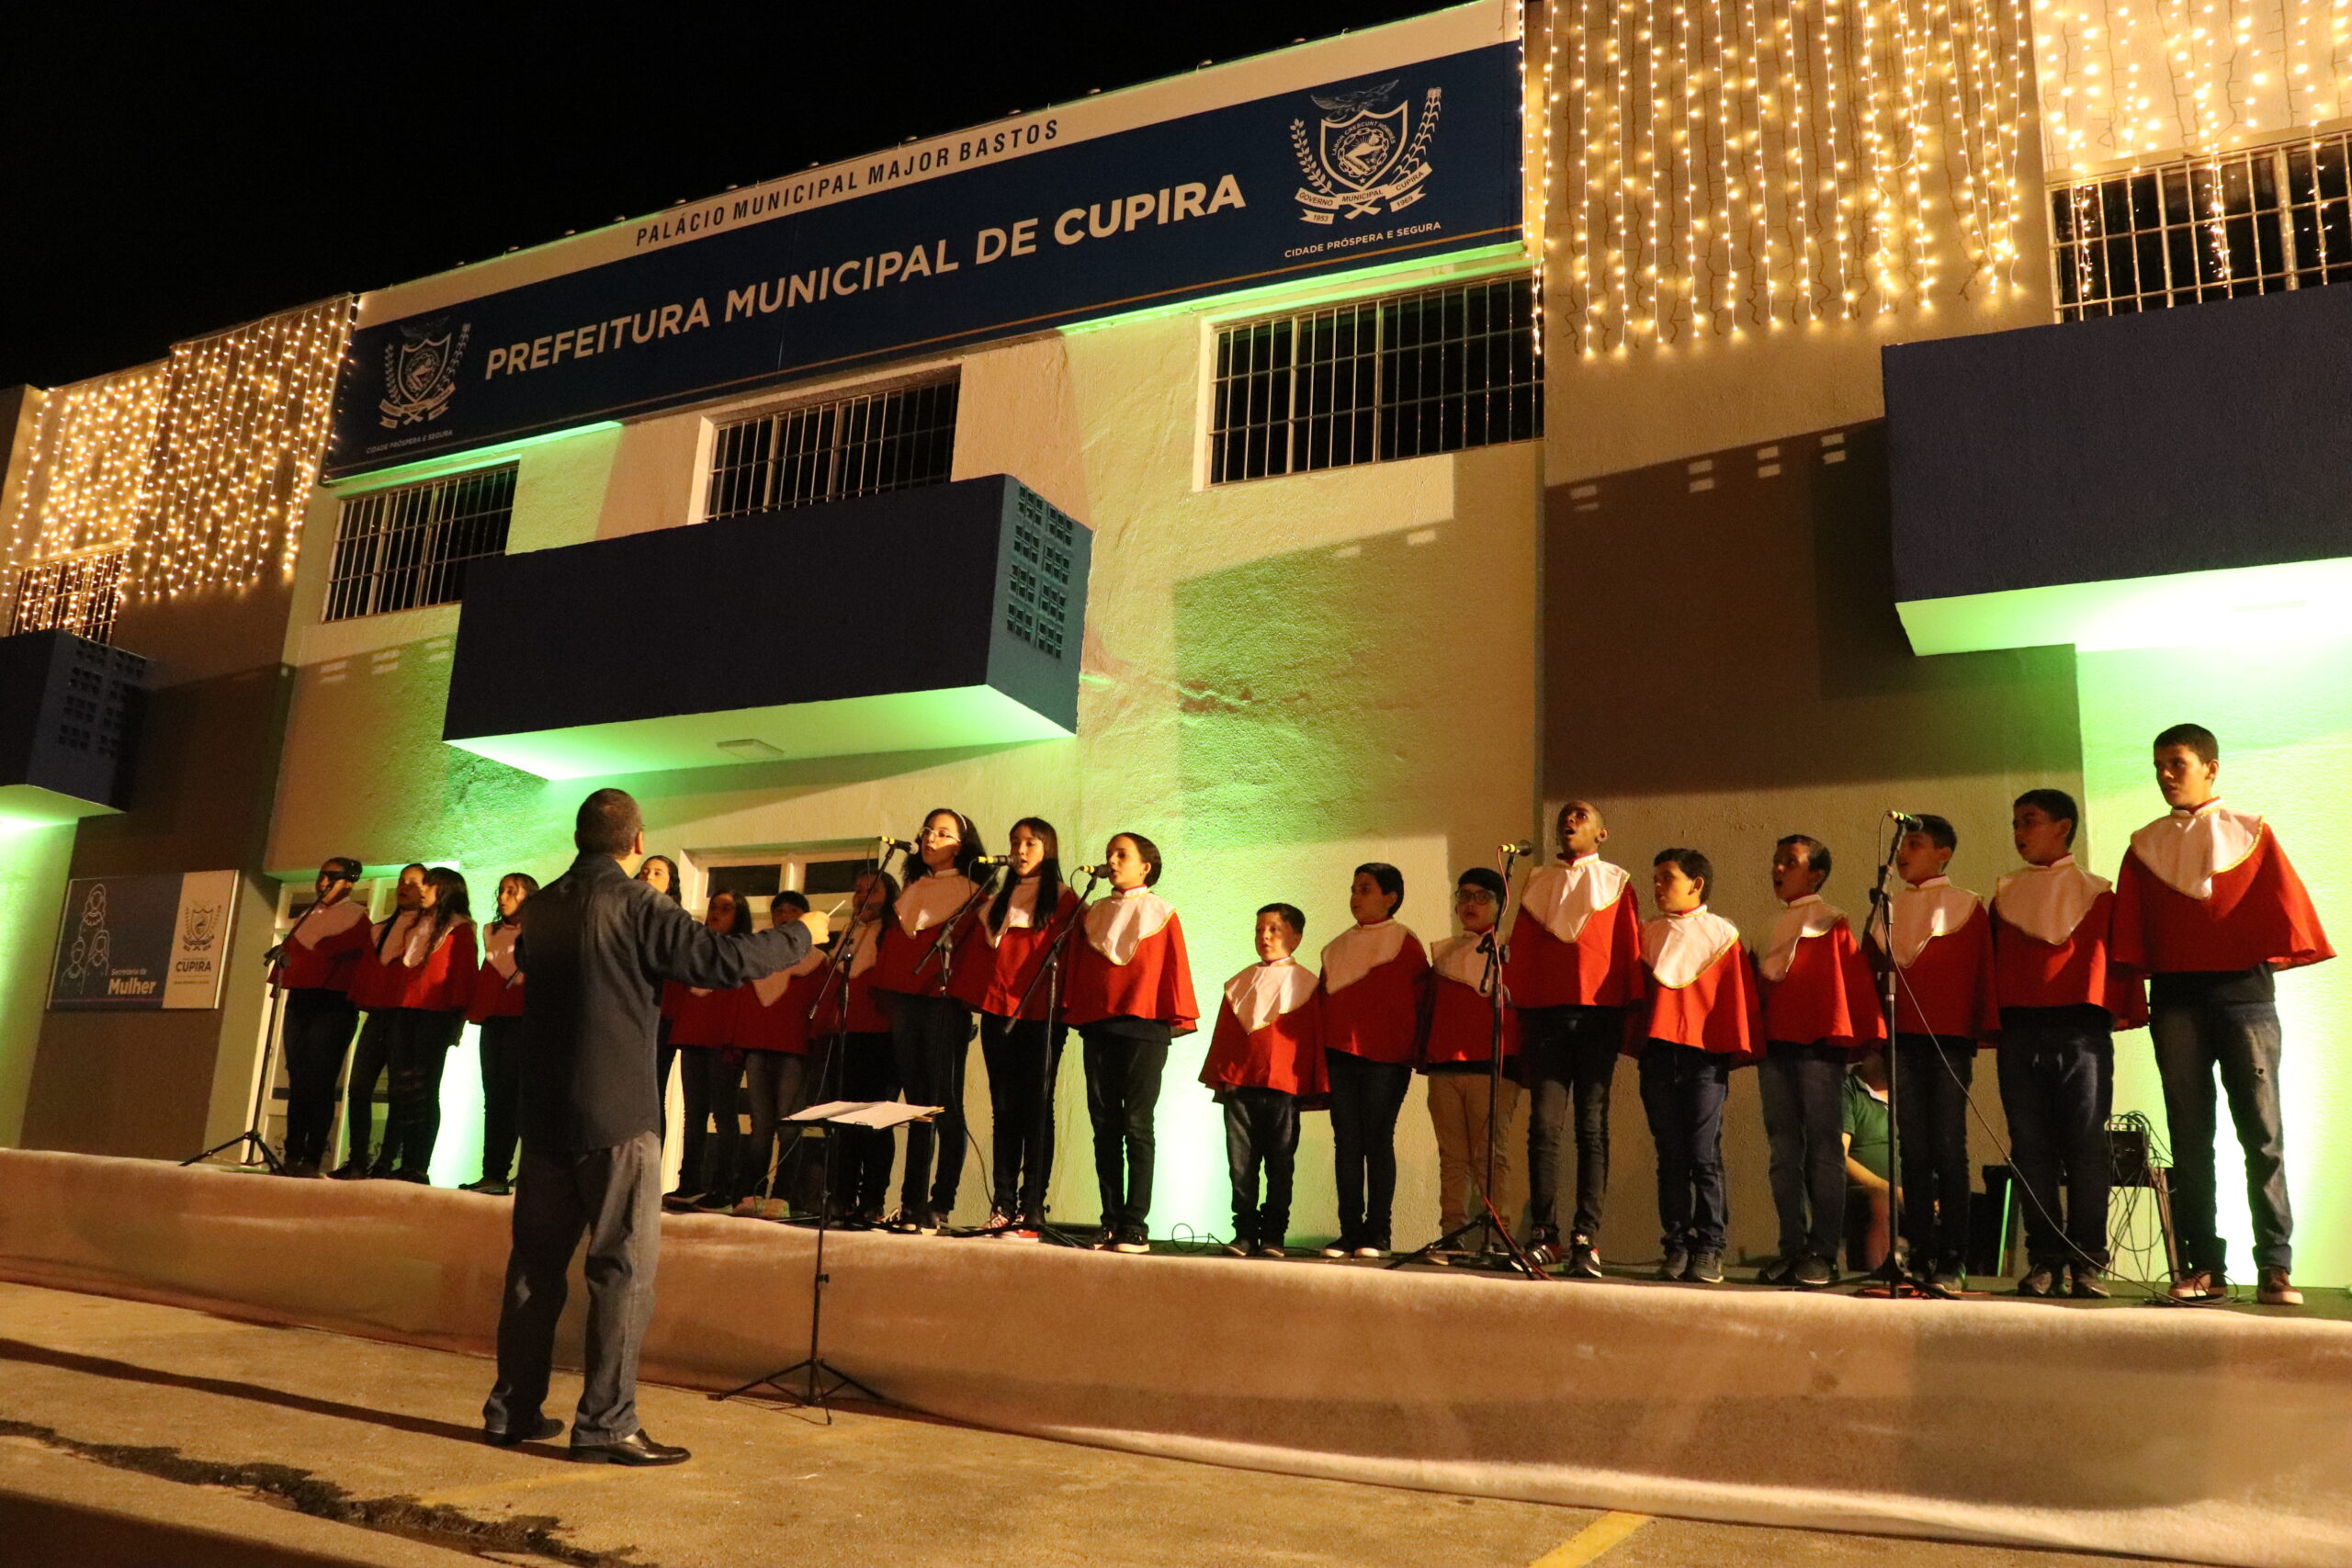 Festividades de fim de ano de Cupira promove cantata natalina, projeções mapeadas e apresentações culturais